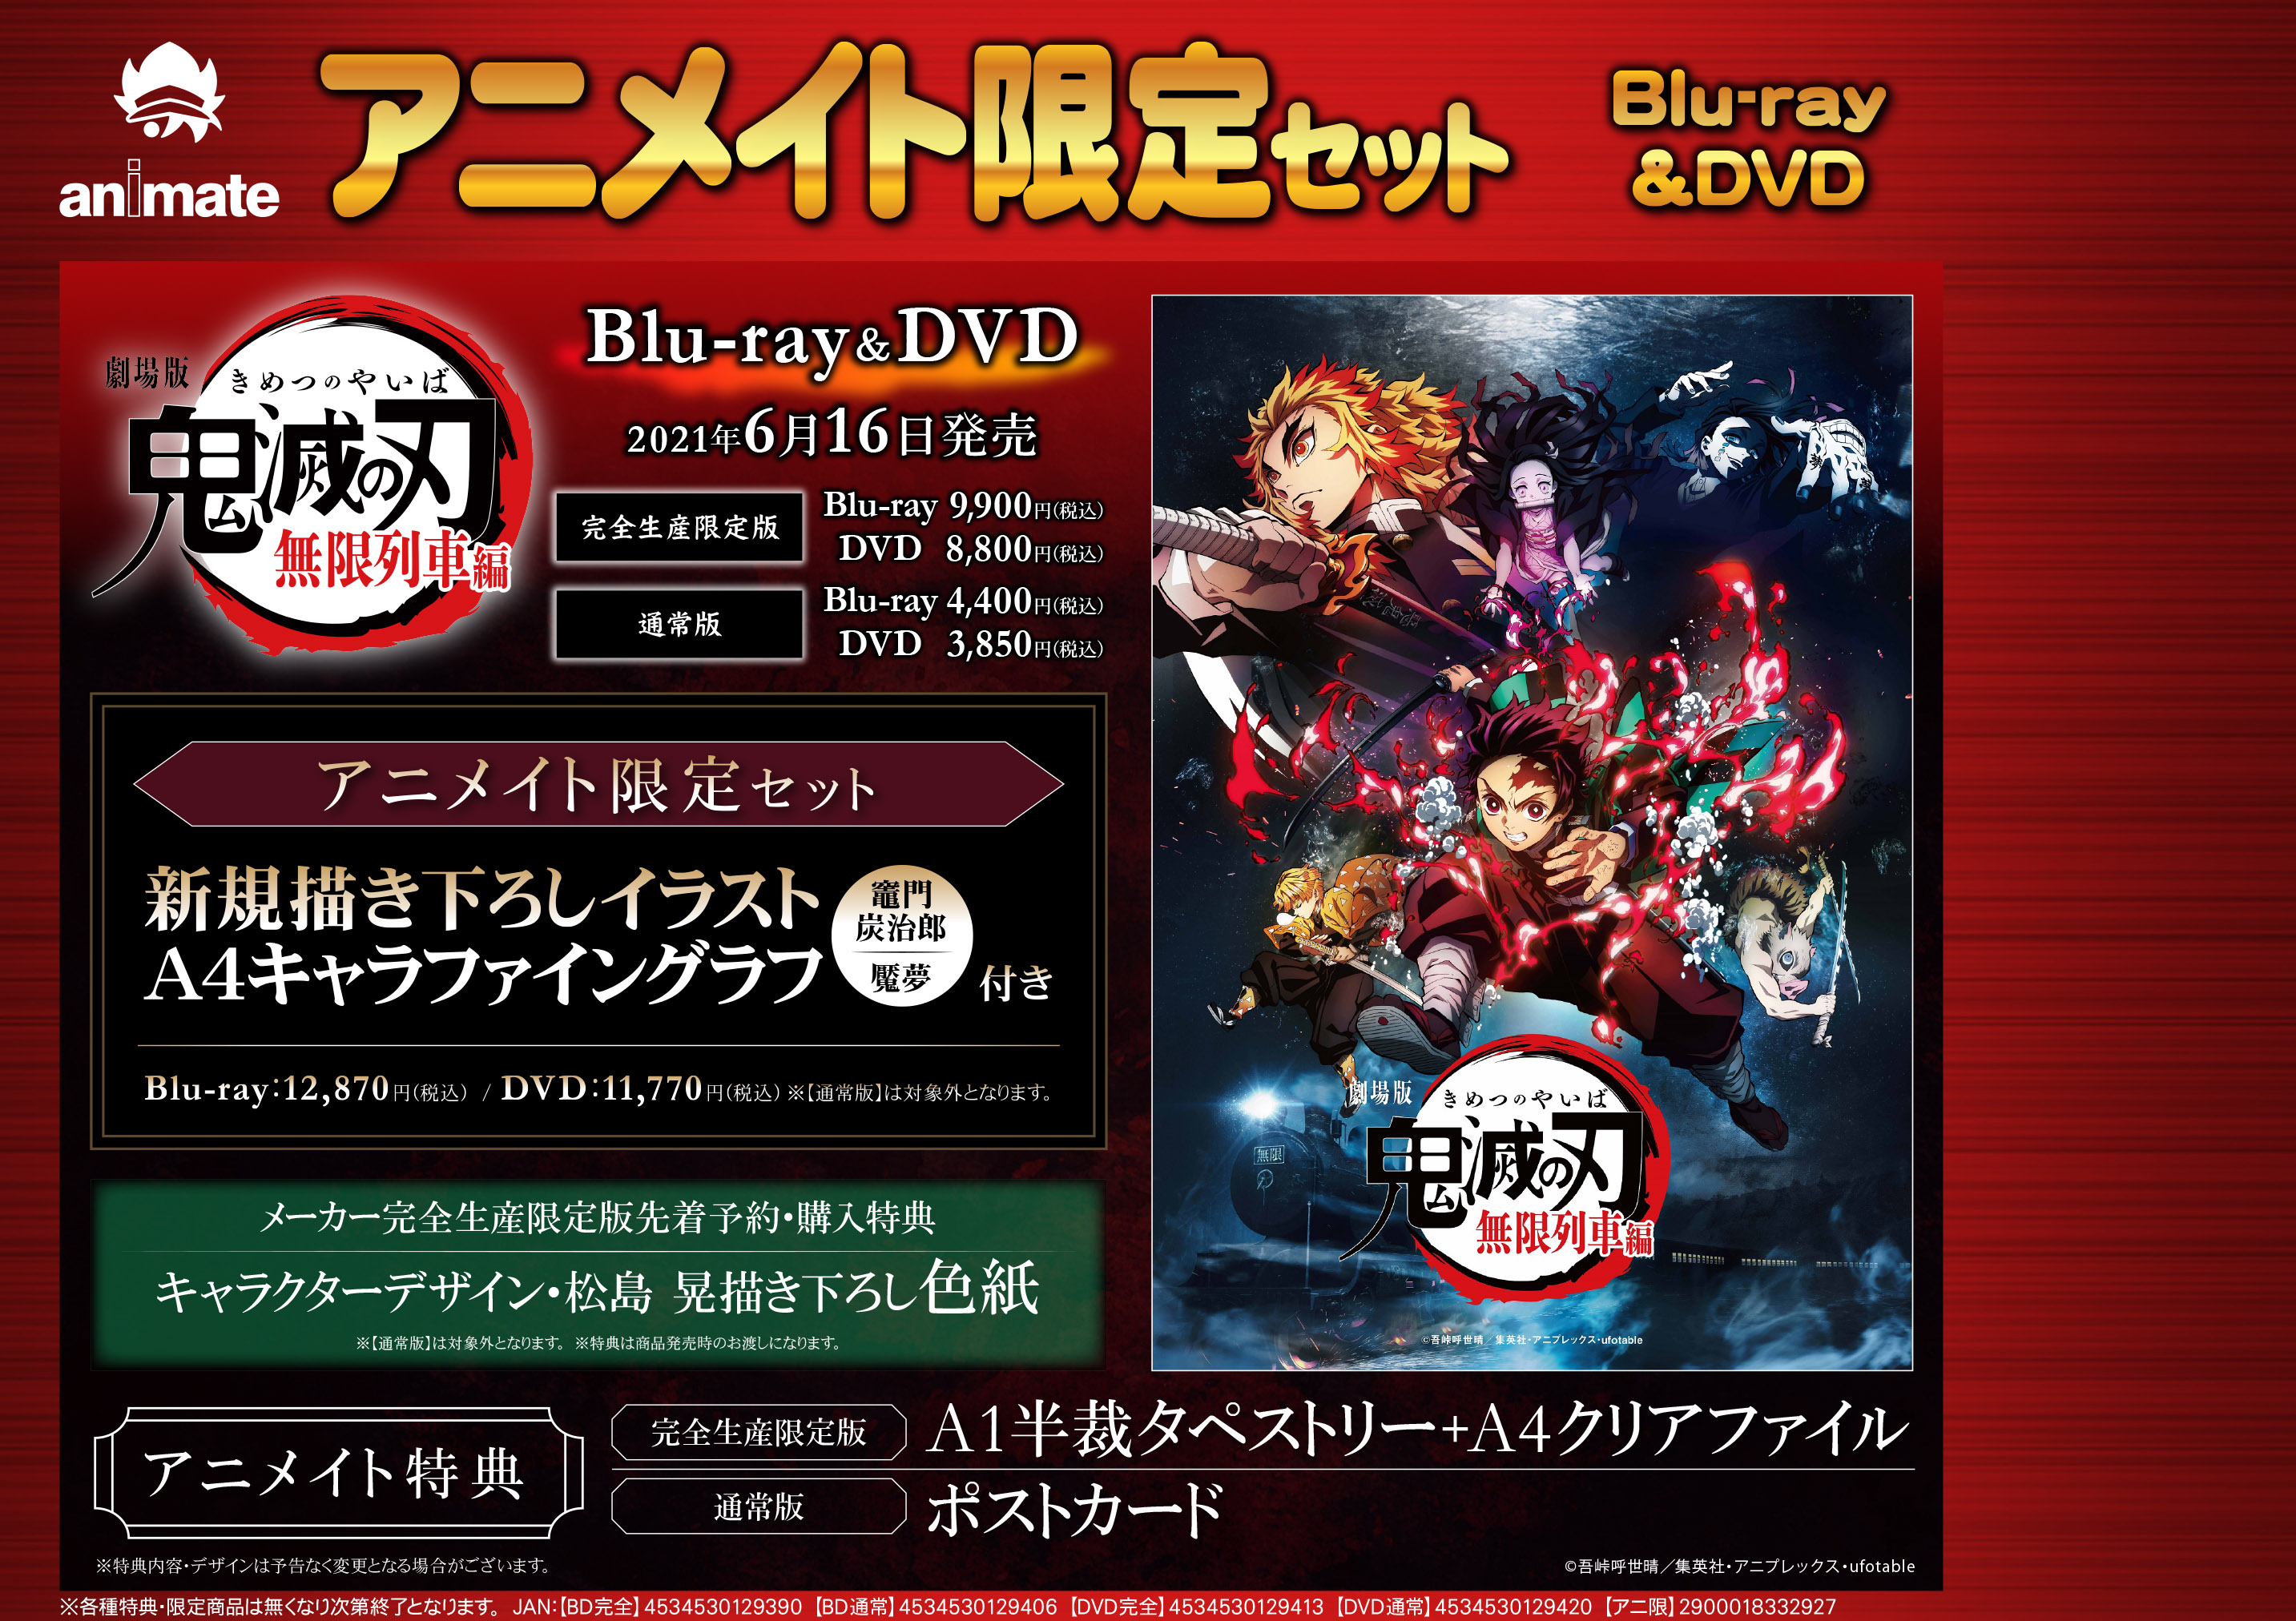 Blu-ray・DVD劇場版「鬼滅の刃」無限列車編 いよいよ6月16日発売 ...